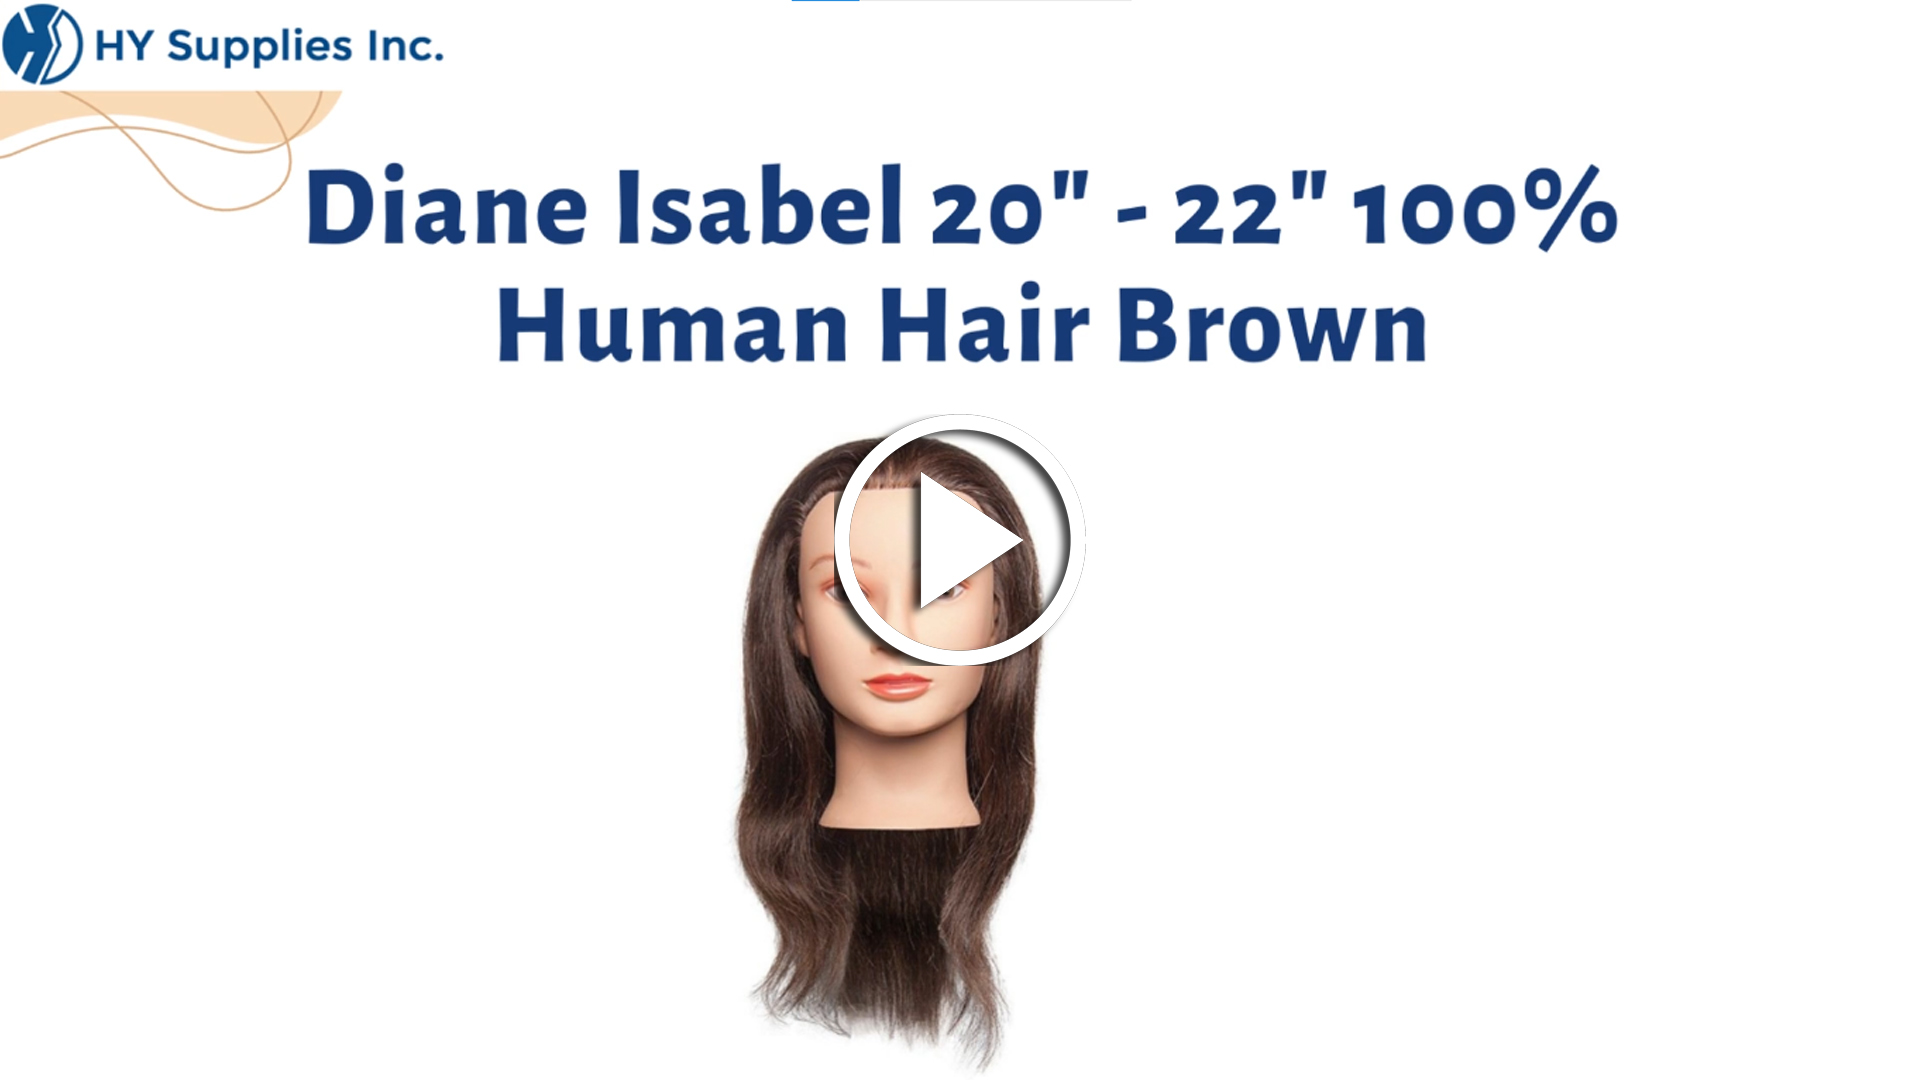 Diane Isabel 20"- 22" 100% Human Hair Brown